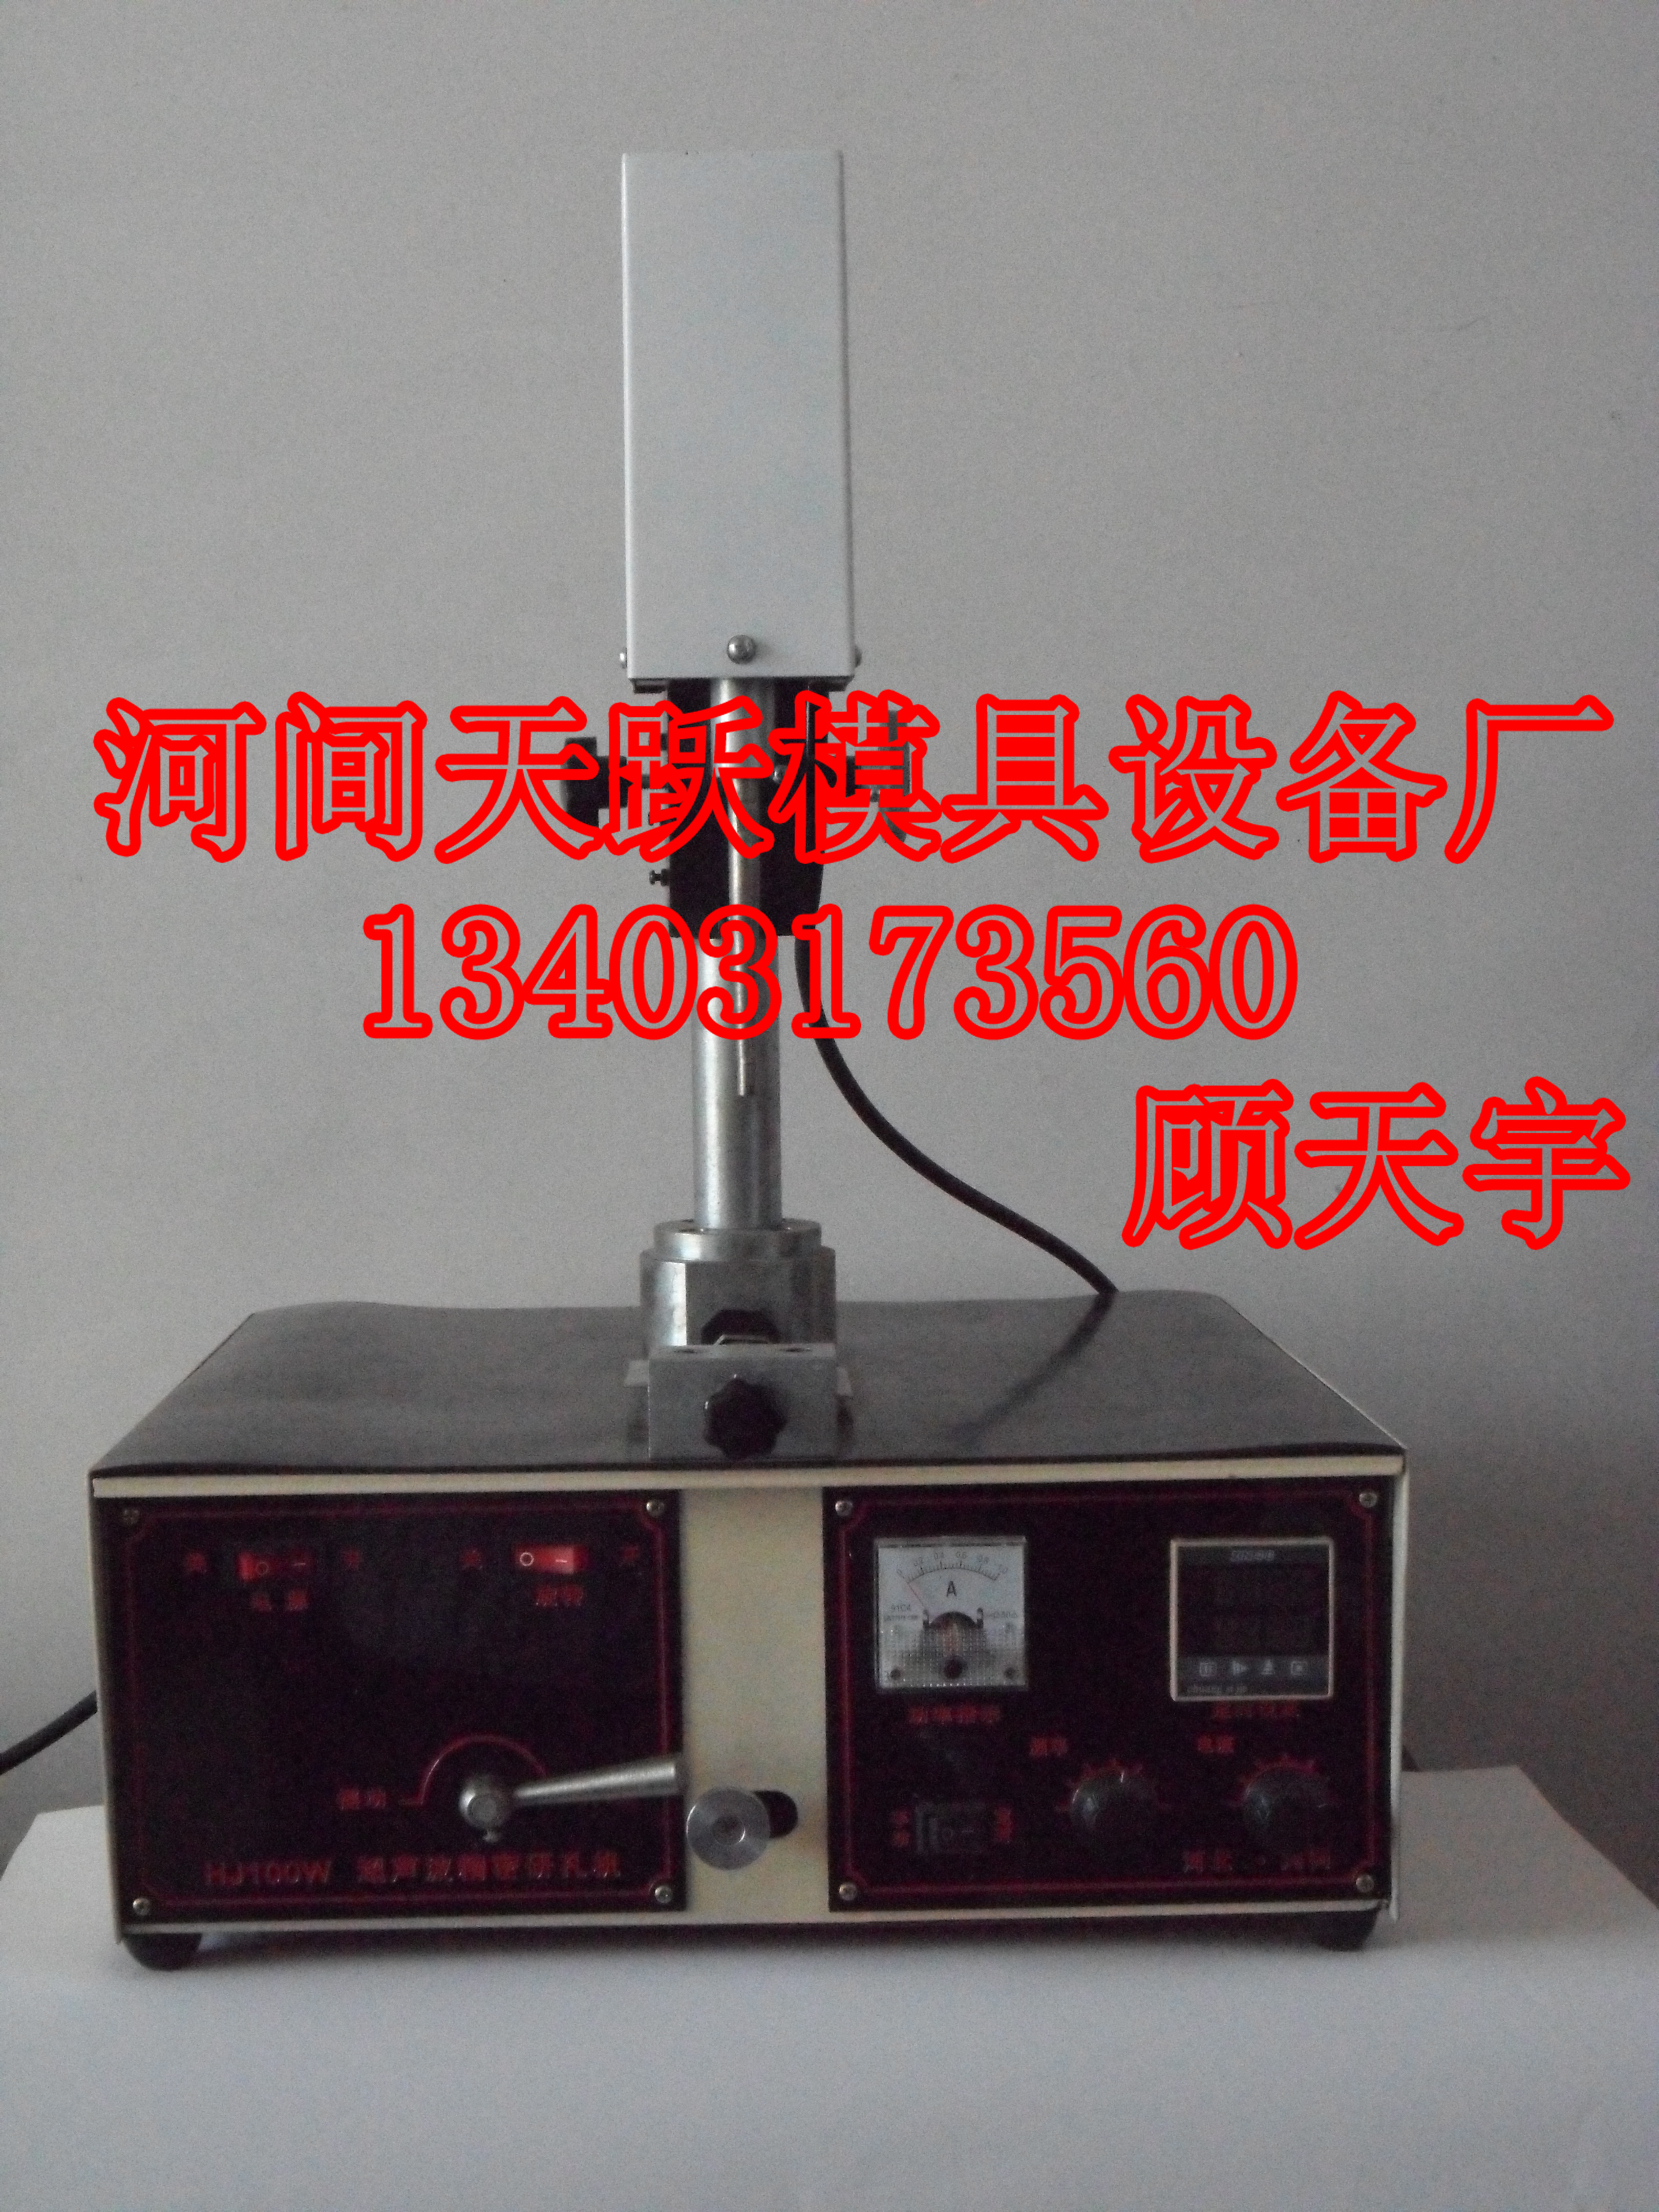 沧州市TY-100型拉丝模具研磨机厂家